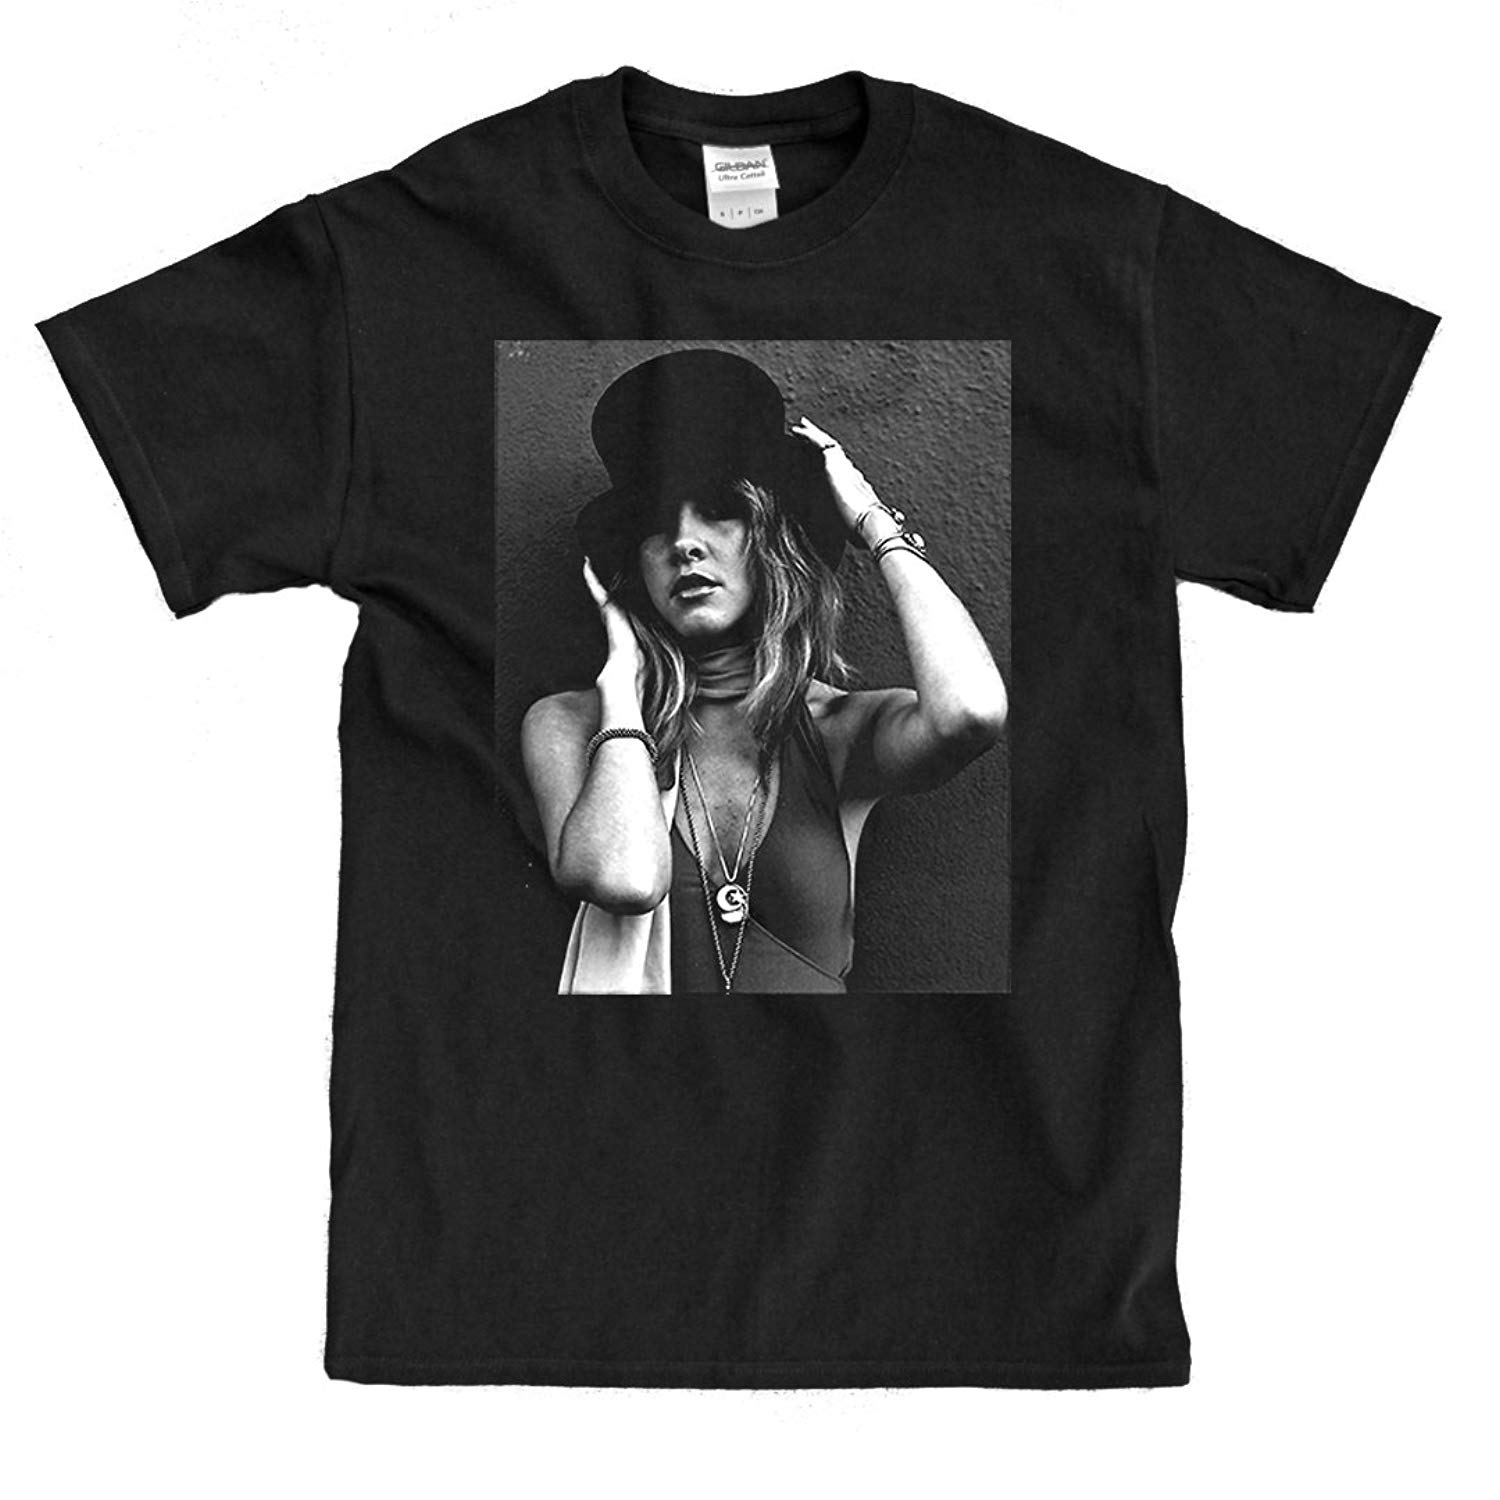 Stevie Nicks Top Hat Black Shirt